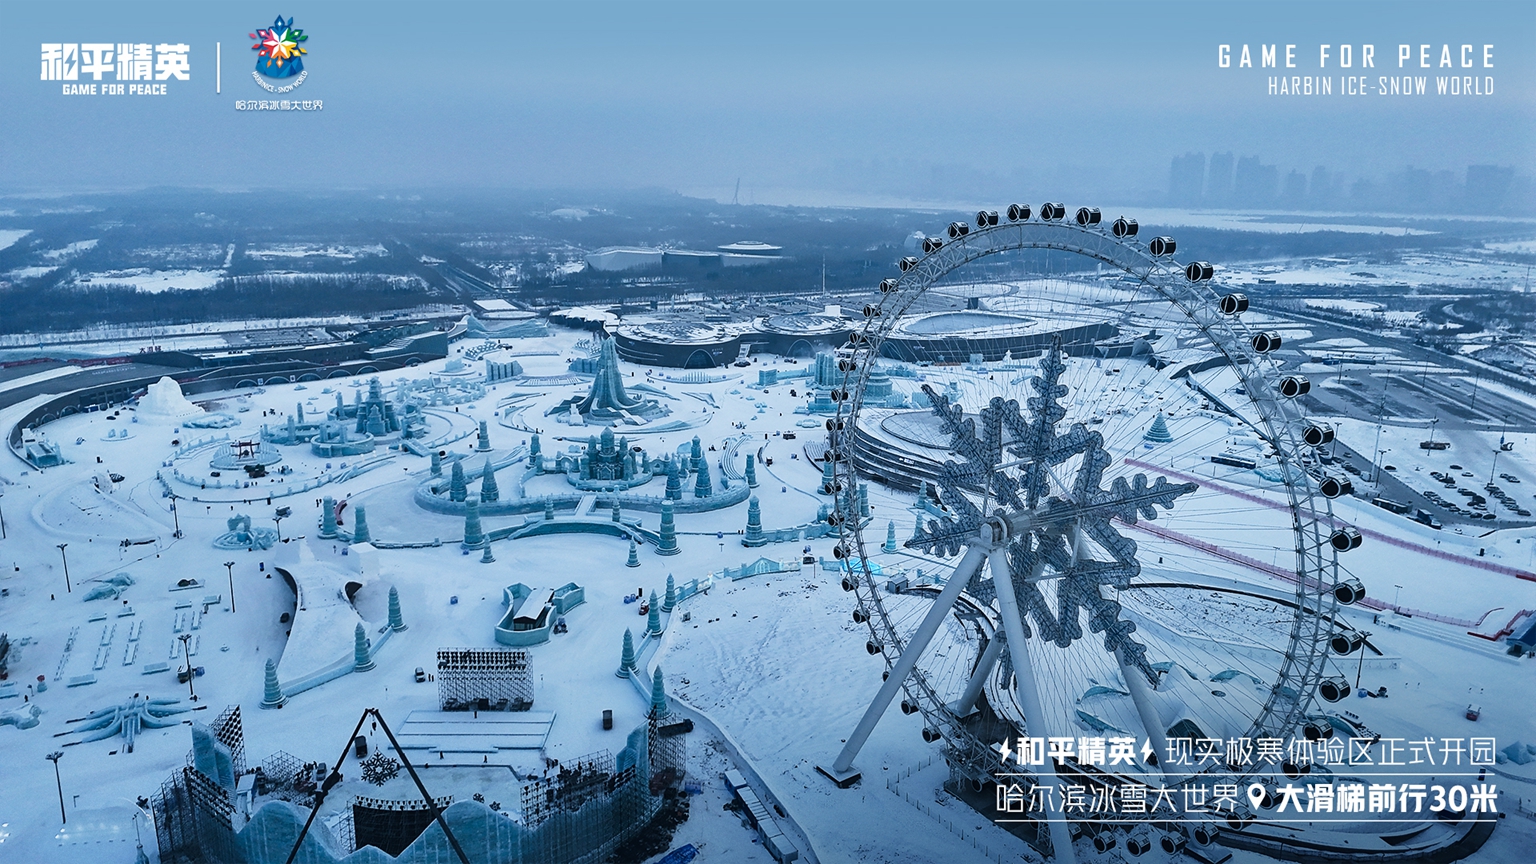 和平精英携手史上最大规模的哈尔滨冰雪大世界(开展一场精彩绝伦的沉浸式冰雪盛宴)